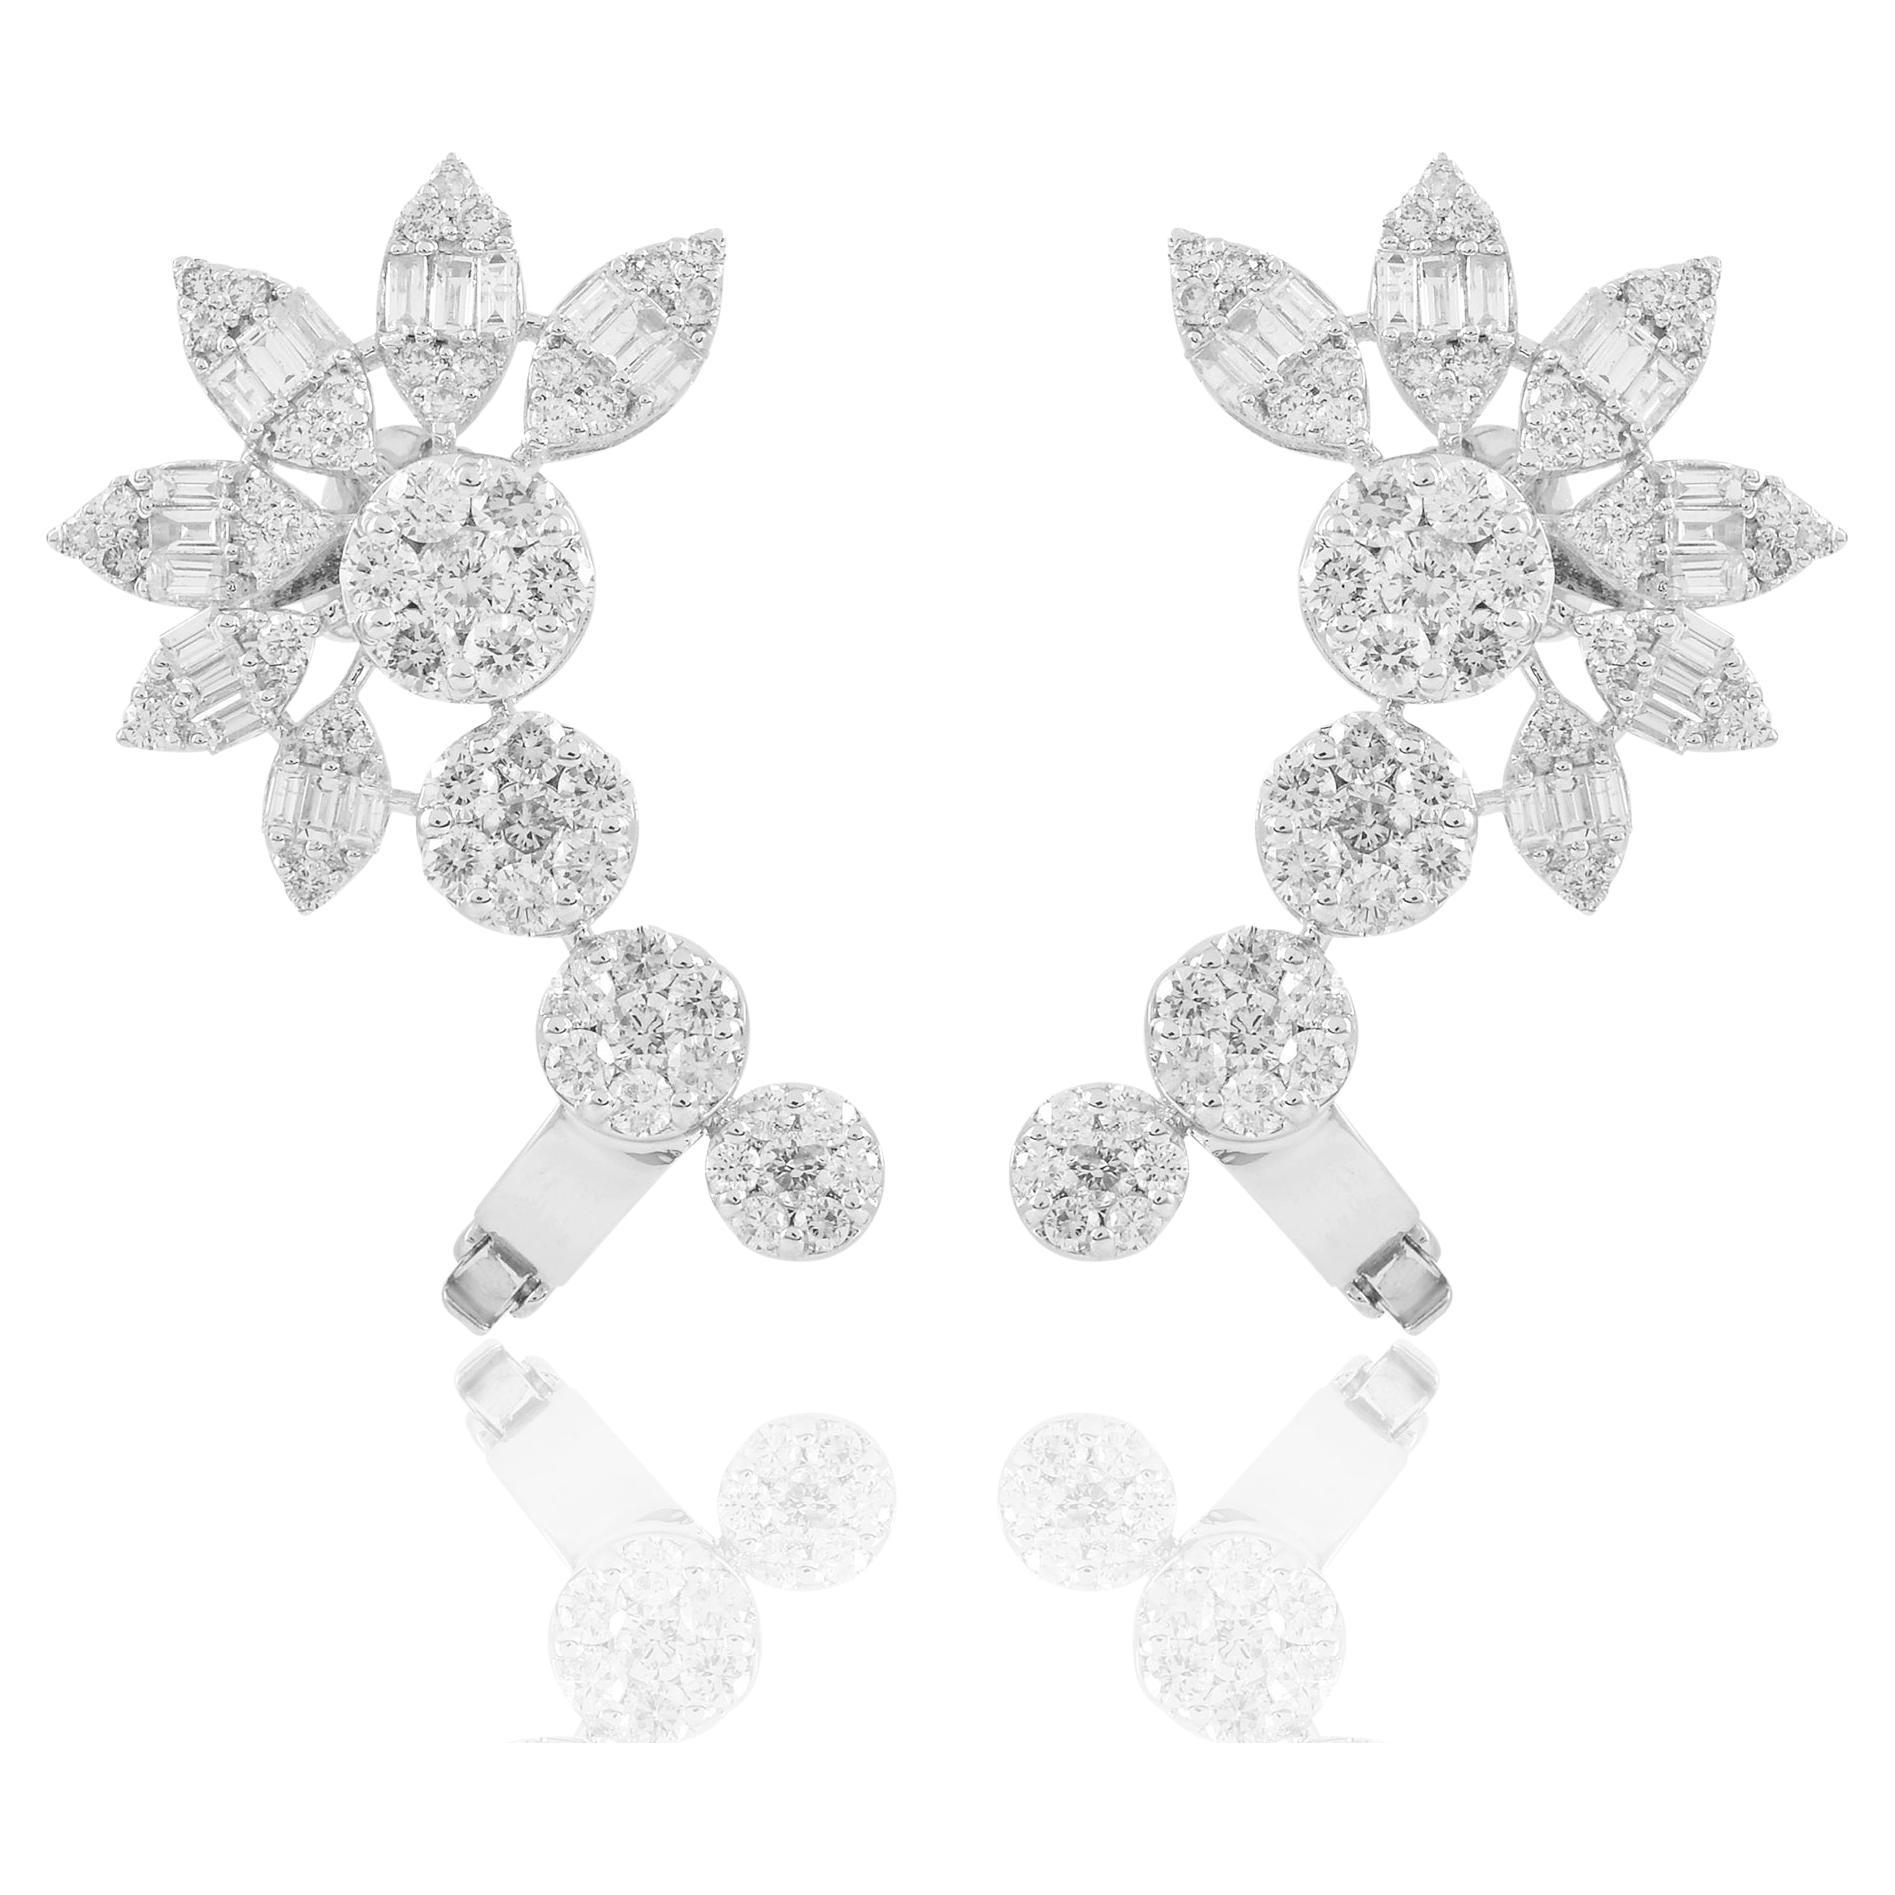 4 Carat Baguette Round Diamond Ear Cuff Earrings 18 Karat White Gold Jewelry For Sale